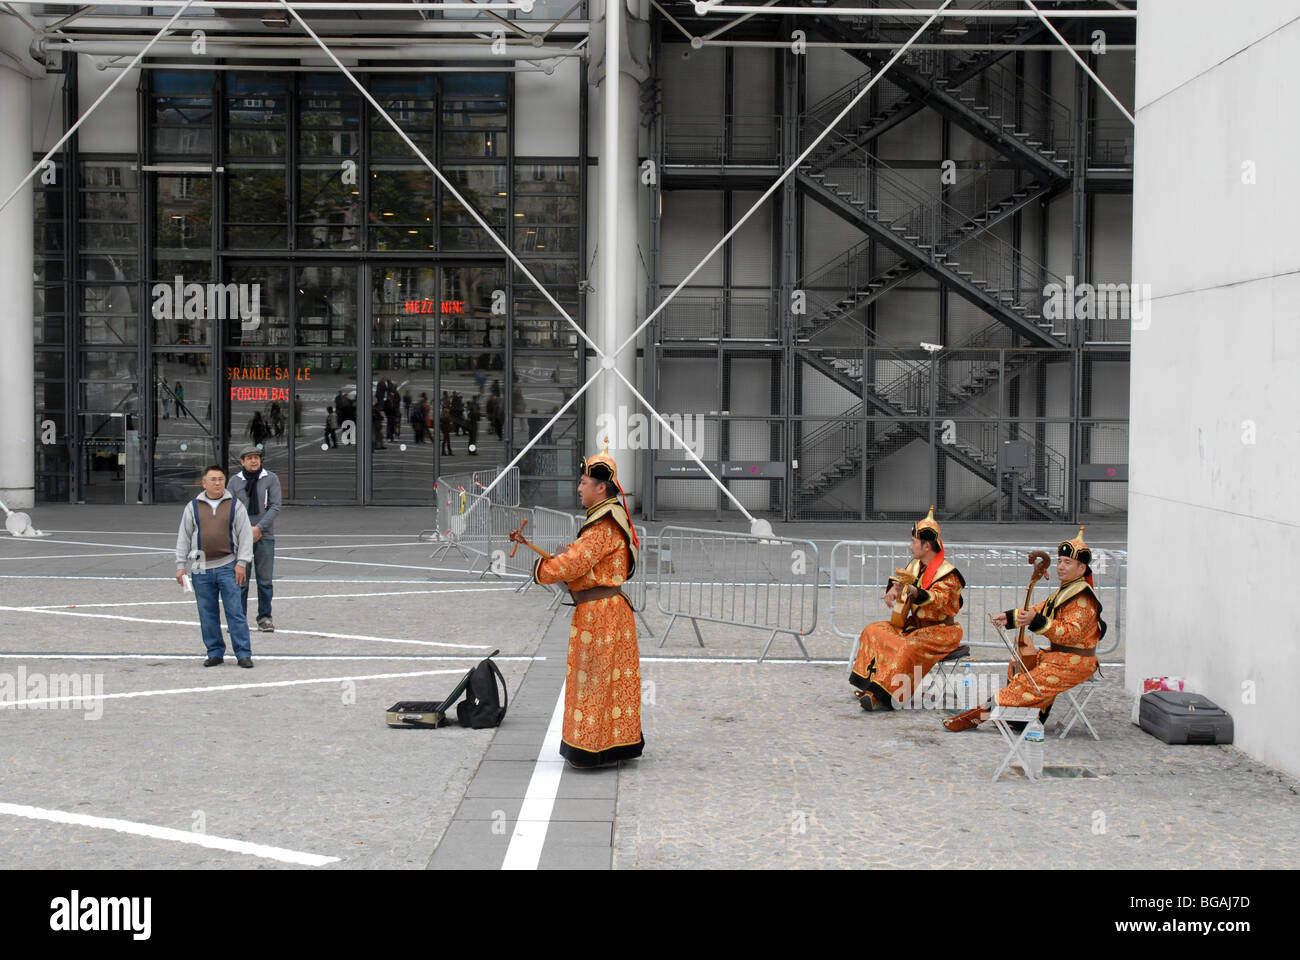 France, Paris, le mongol des musiciens de rue au Centre Georges Pompidou Banque D'Images